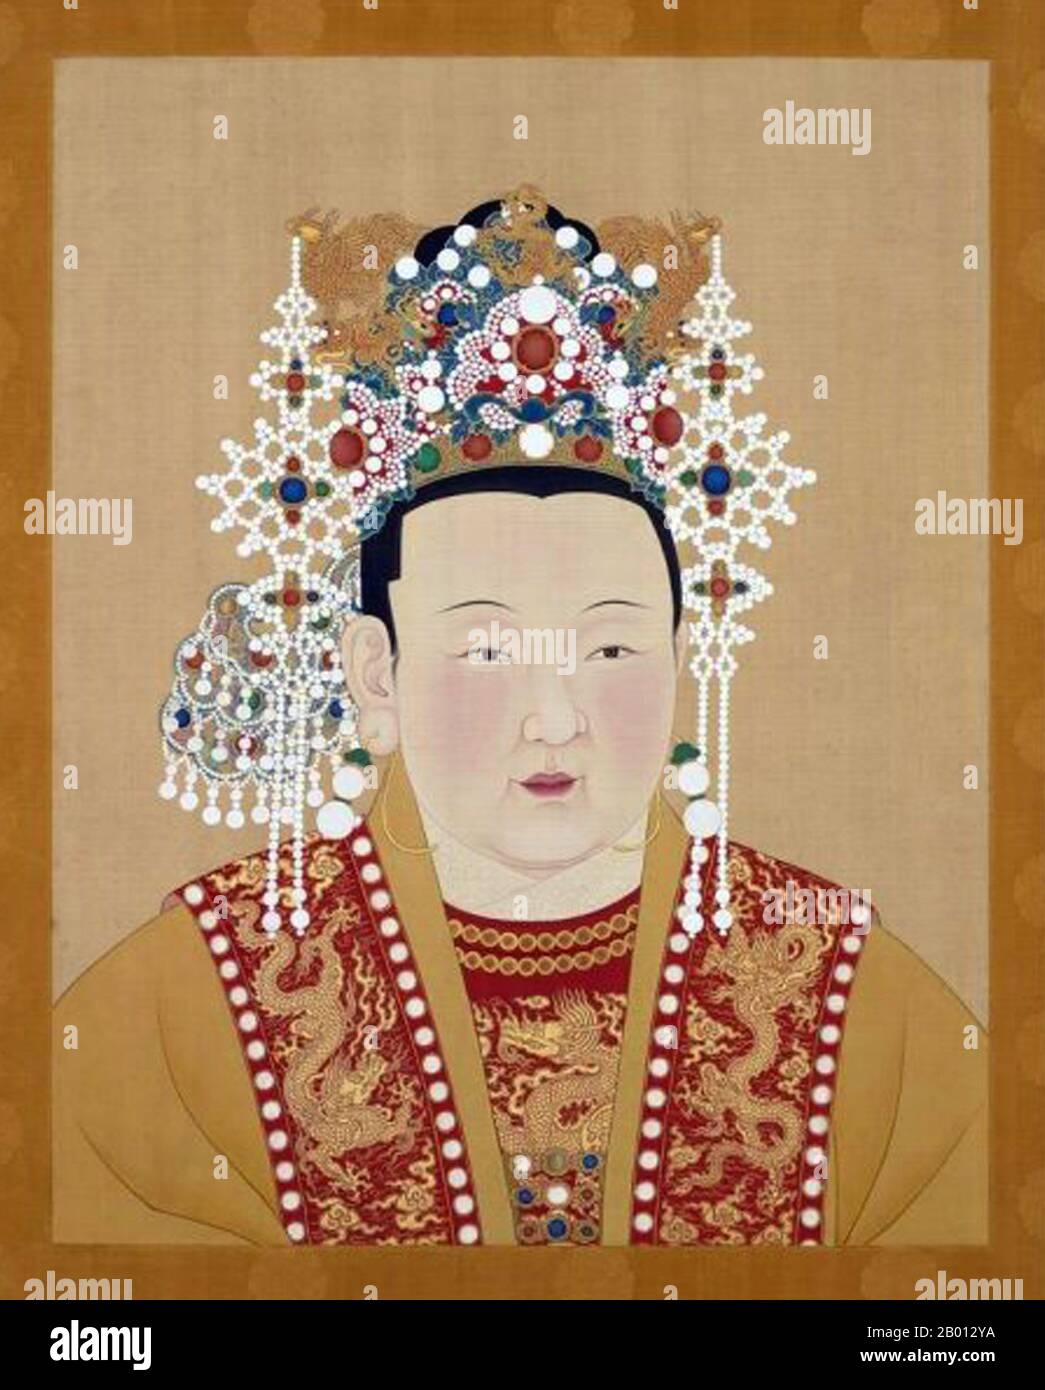 China: Kaiserin Ren Xiao Wen (1362-1407), Gemahlin des 3. Ming-Imperators Yongle (r. 1402-1424). Hängende Schriftrolle, 15.-17. Jahrhundert. Die Kaiserin Xu (1362. - 1407. Juli), formell Kaiserin Renxiaowen, Geburtsname Xu Yihua, war von 1402 bis 1407 die dritte Kaiserin der Ming-Dynastie. Ihr Mann war der Yongle-Kaiser. Sie war gut ausgebildet und kompilierte Bibliographien tugendhafter Frauen, eine Aktivität, die mit der Gerichtspolitik in Verbindung stand. Kaiserin Xu ist auch die erste Person, die ein buddhistisches Sutra aus einer Traumoffenbarung transkribiert hat. Stockfoto